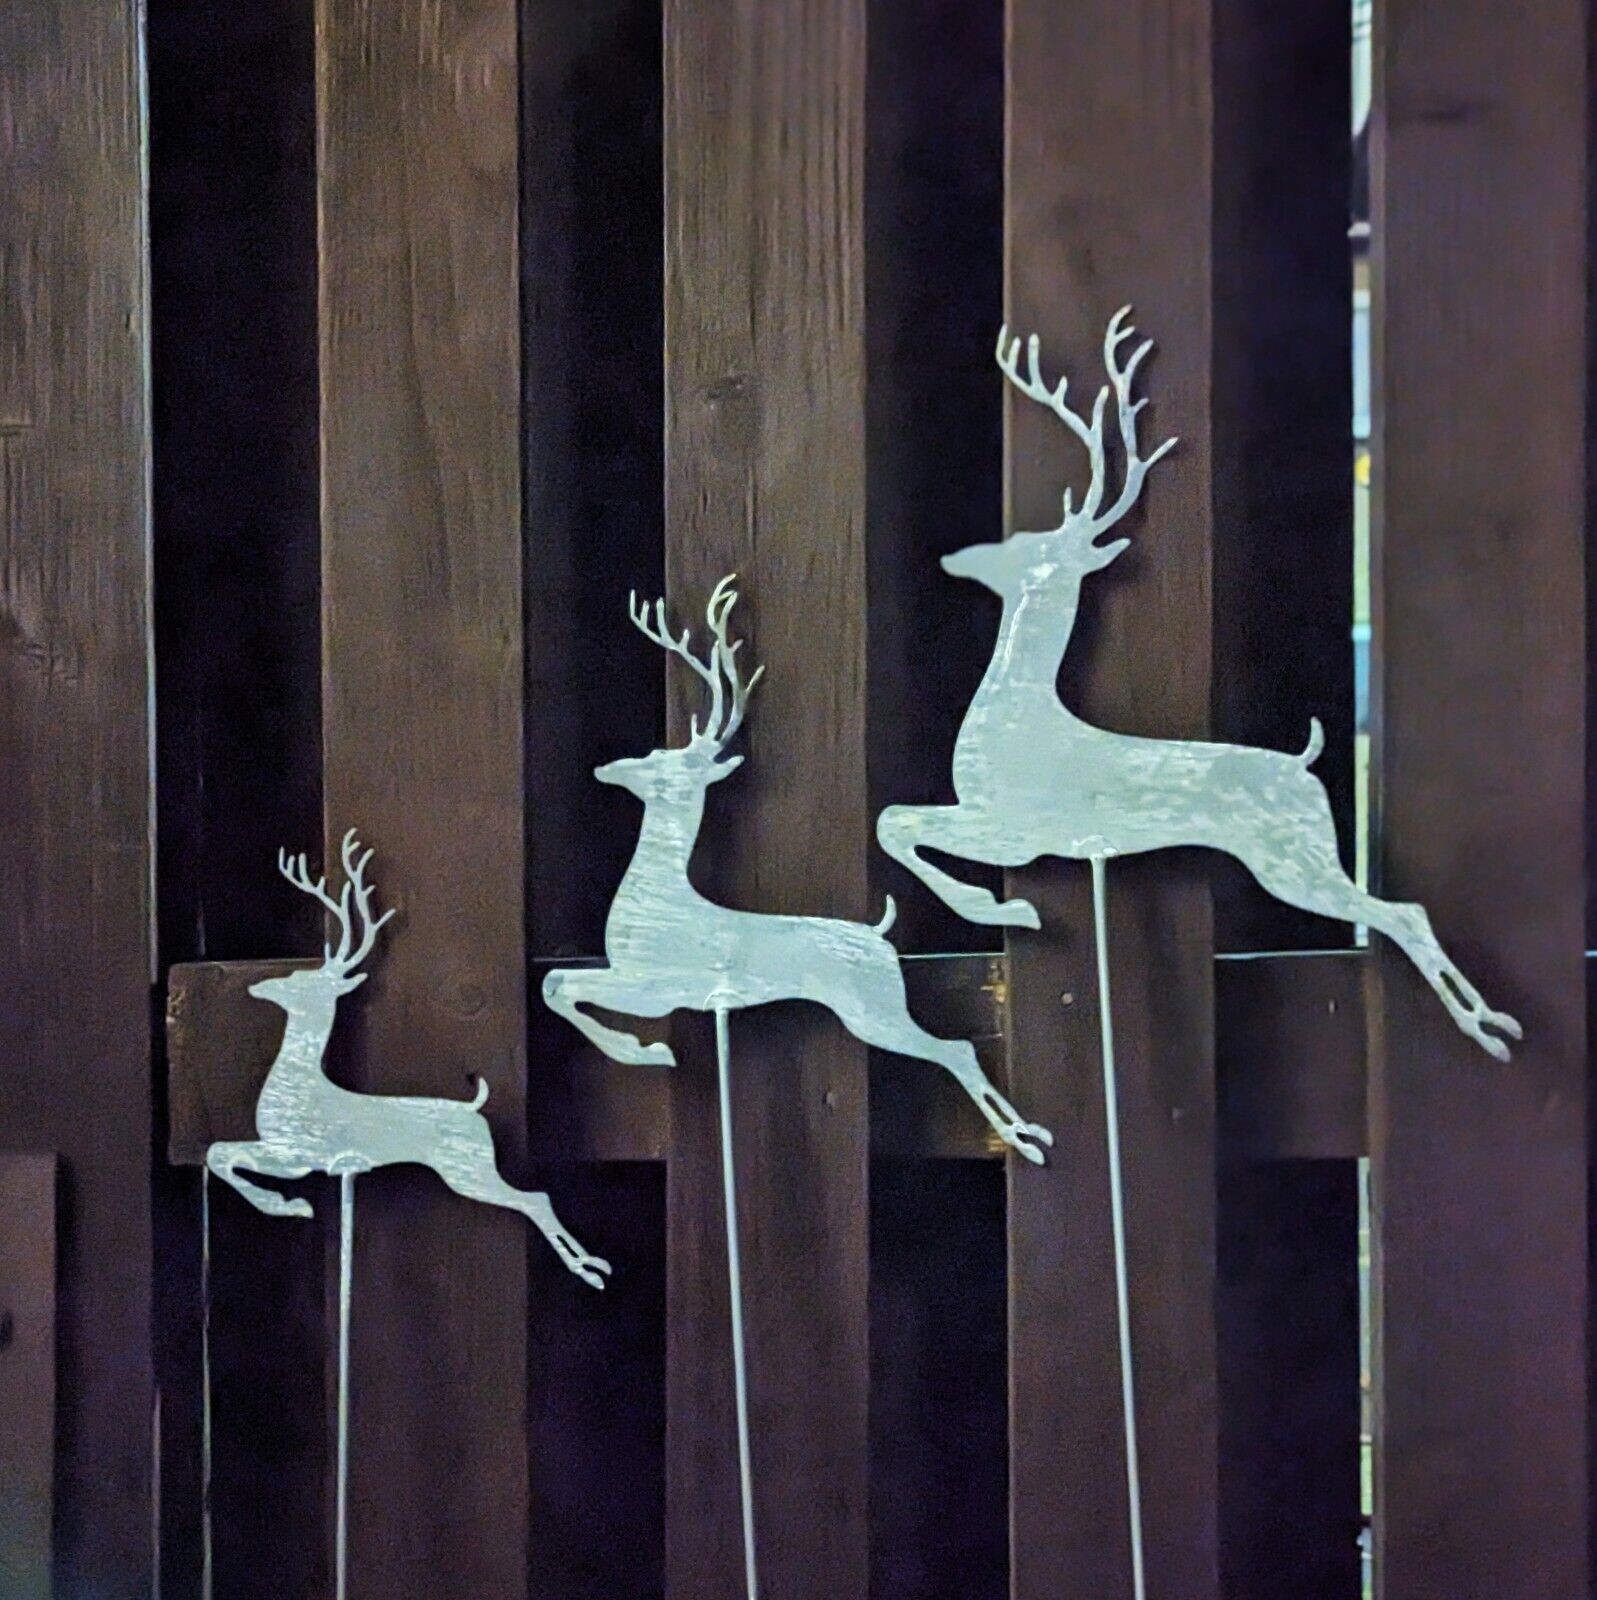 Rustic Grey Reindeer Metal Art Garden Stake Christmas Decor Outdoor Ornament